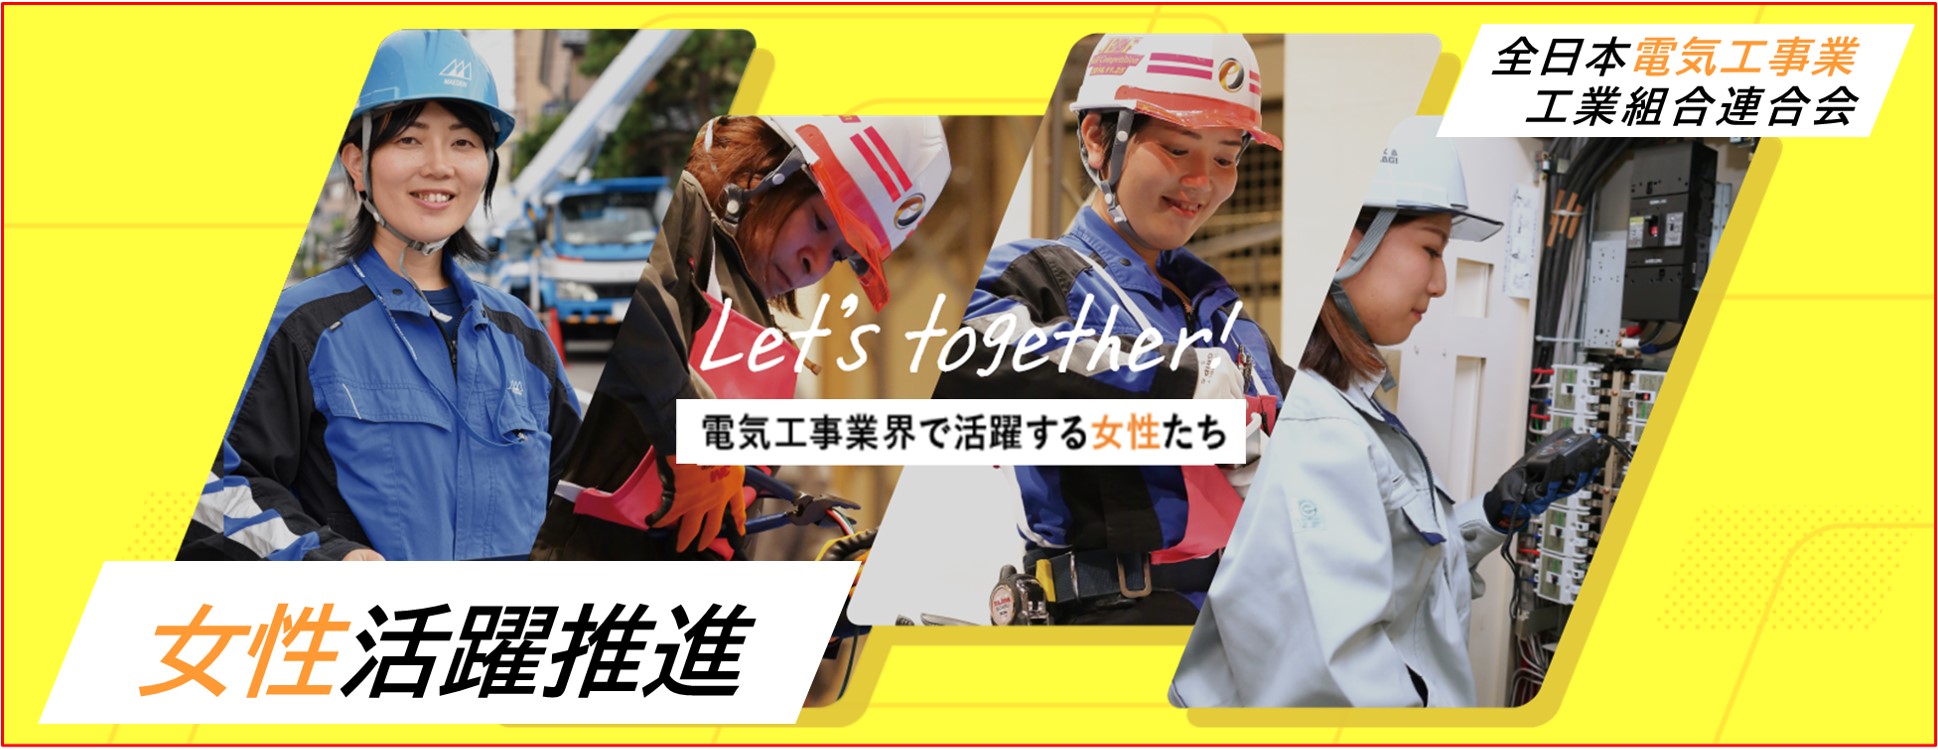 全日本電気工事業工業組合連合会 let's together 電気工事業界で活躍する女性たち  女性活躍推進